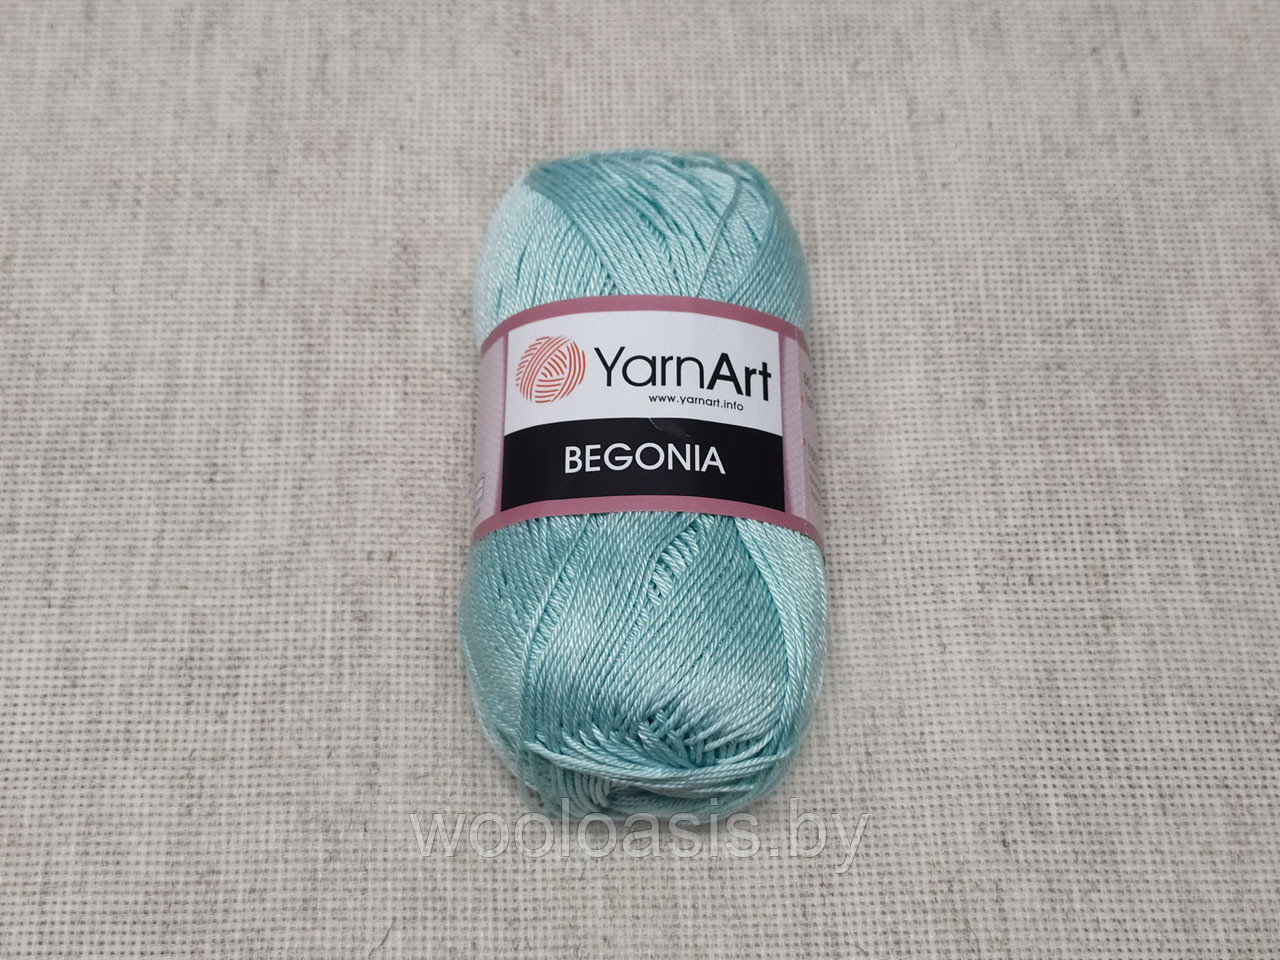 Пряжа YarnArt Begonia, Ярнарт Бегония, турецкая, 100% хлопок, летняя, для ручного вязания (цвет 4939)